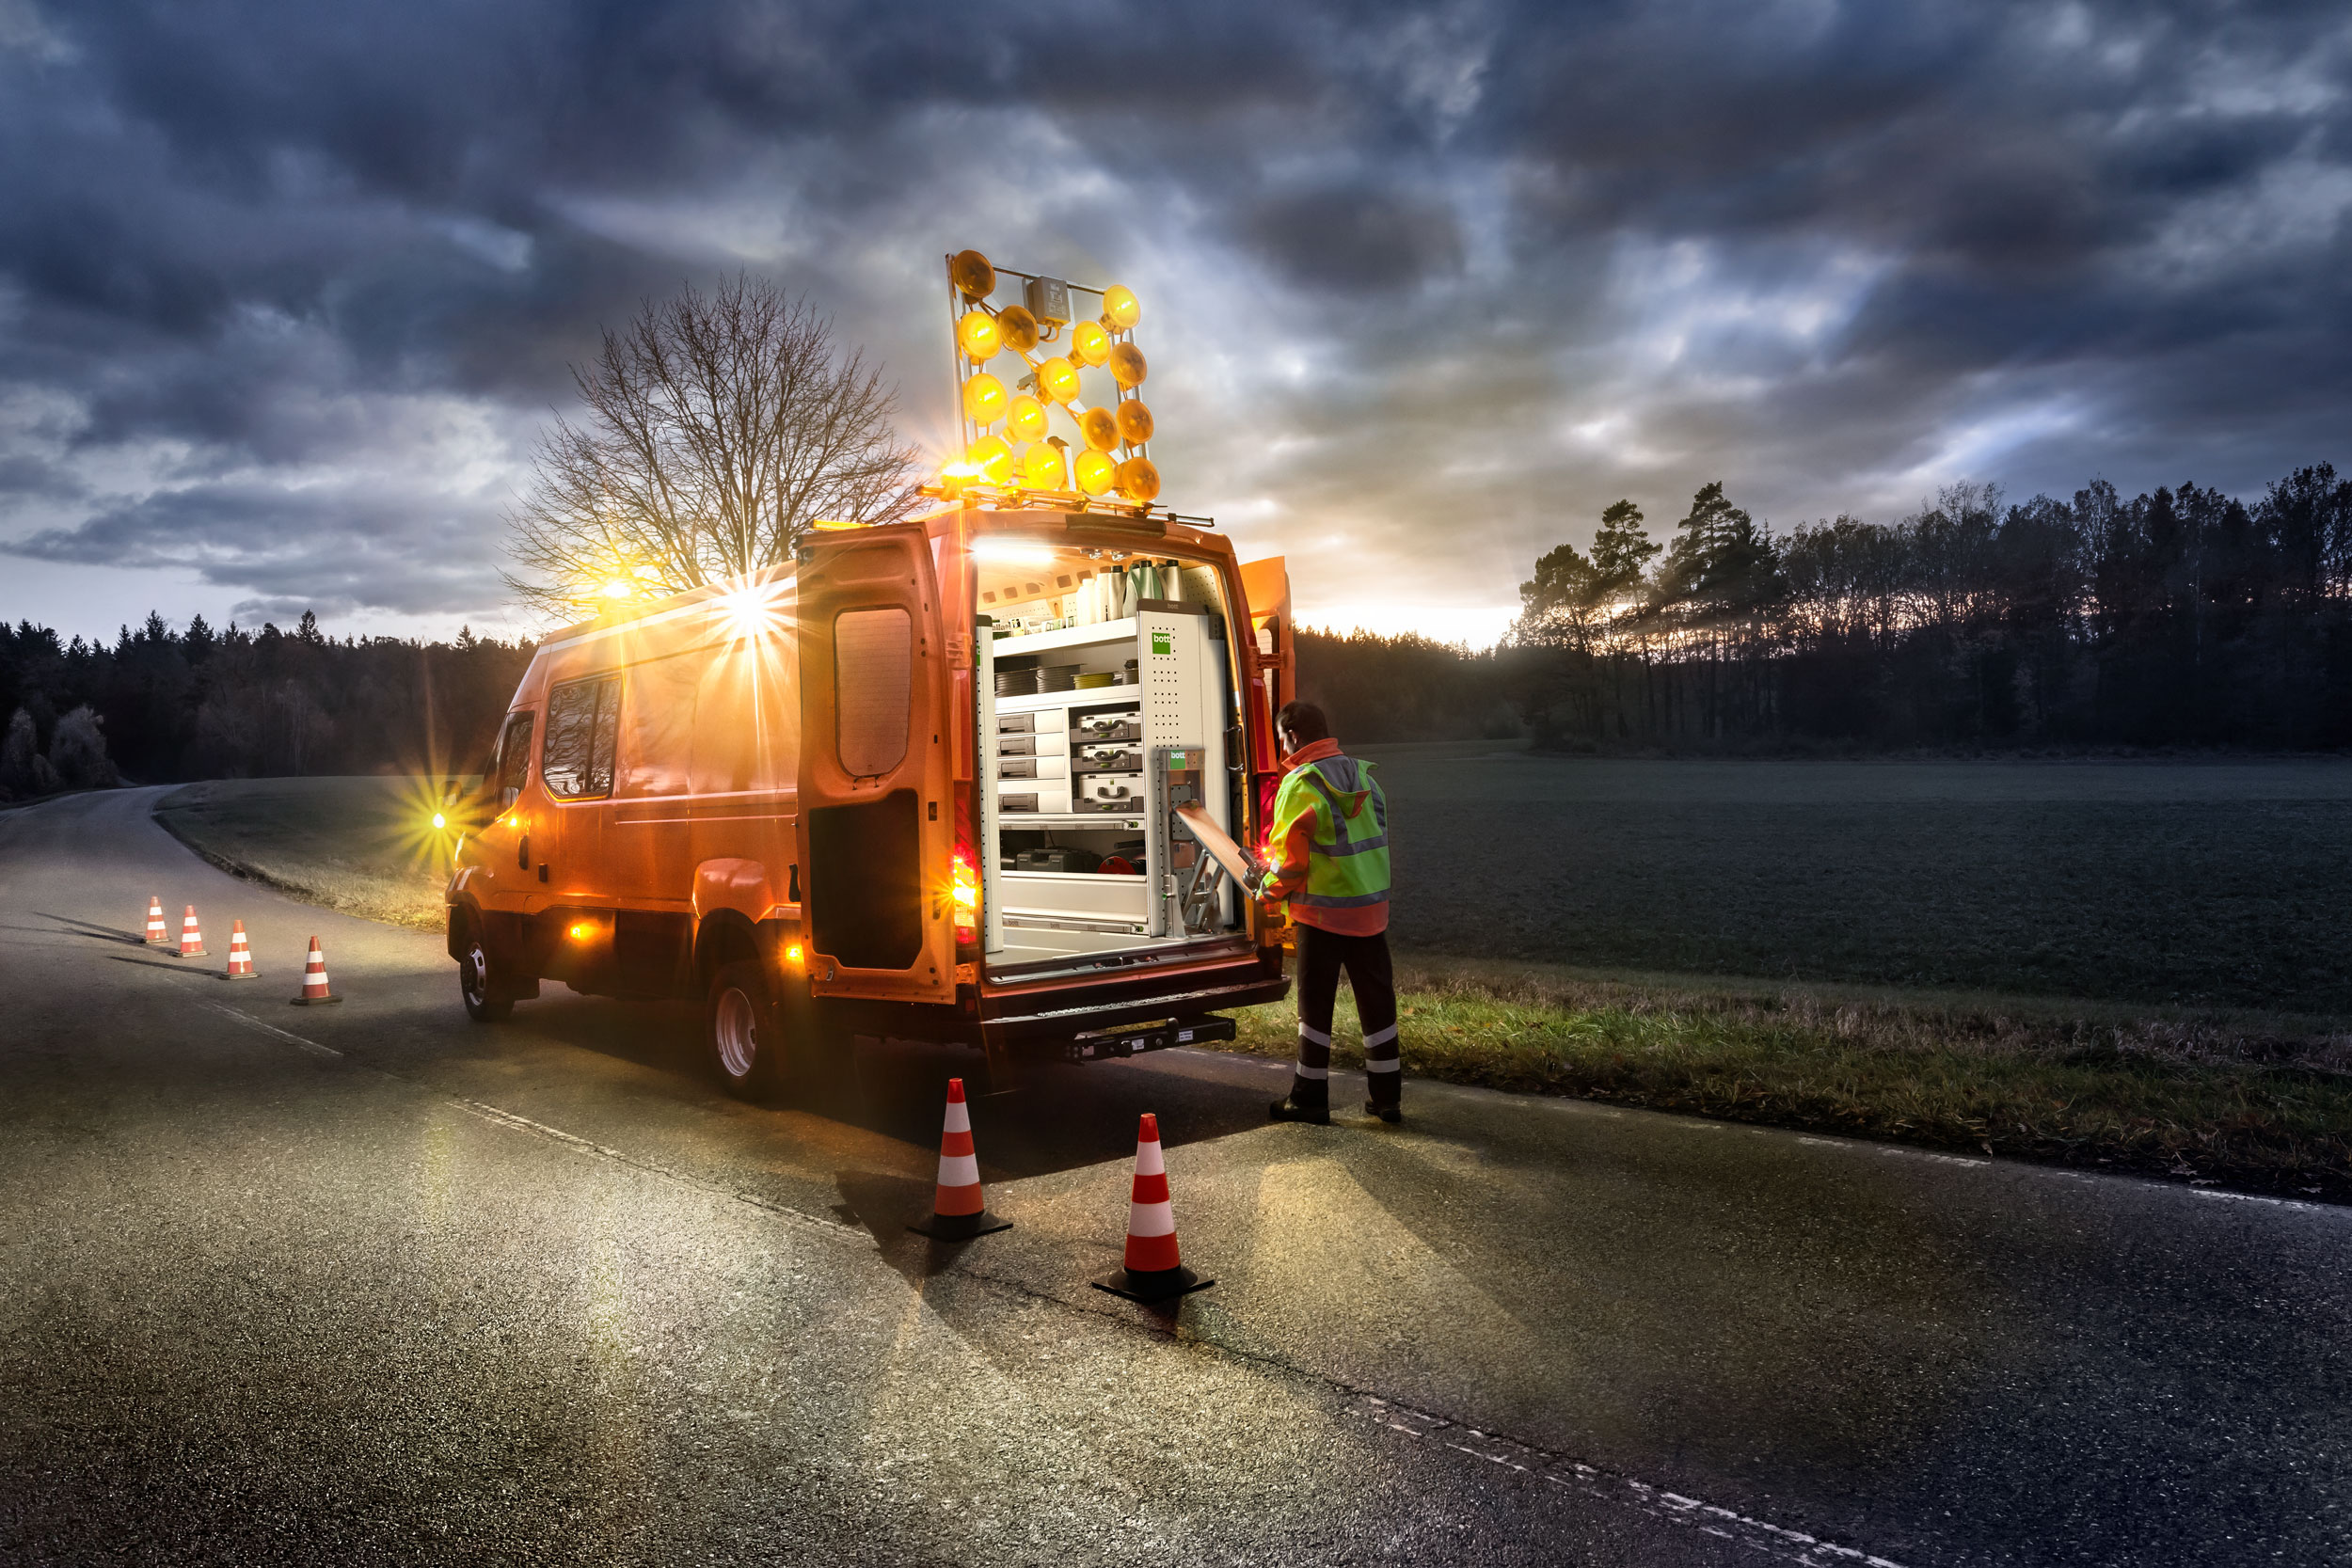 Sur demande, nous intégrons dans votre véhicule de service des solutions adaptées pour l'éclairage supplémentaire : éclairage intérieur, projecteurs de travail ou feux de signalisation de chantier.